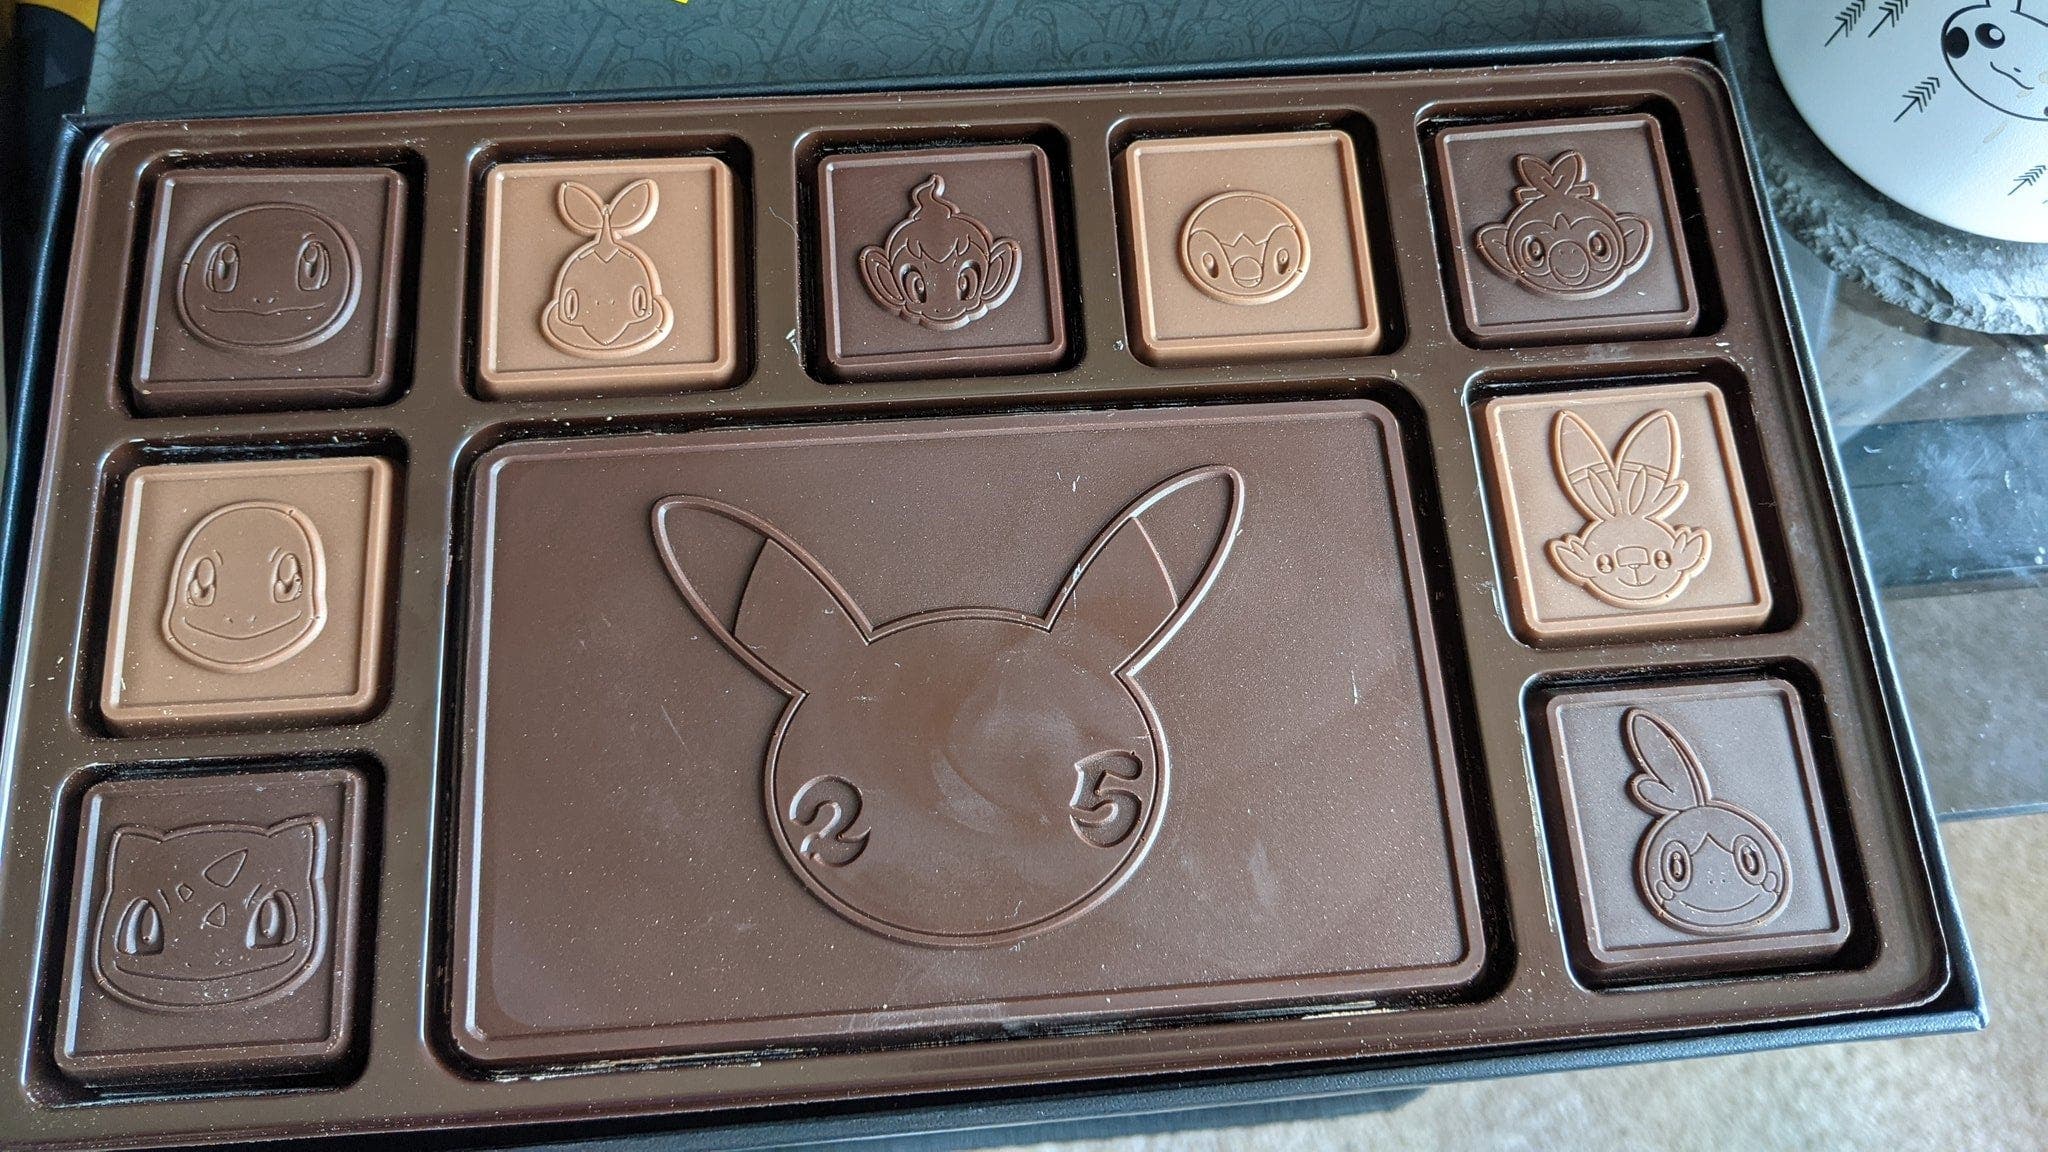 Hasta este chocolate oficial está generando especulación de remakes de Pokémon Diamante y Perla